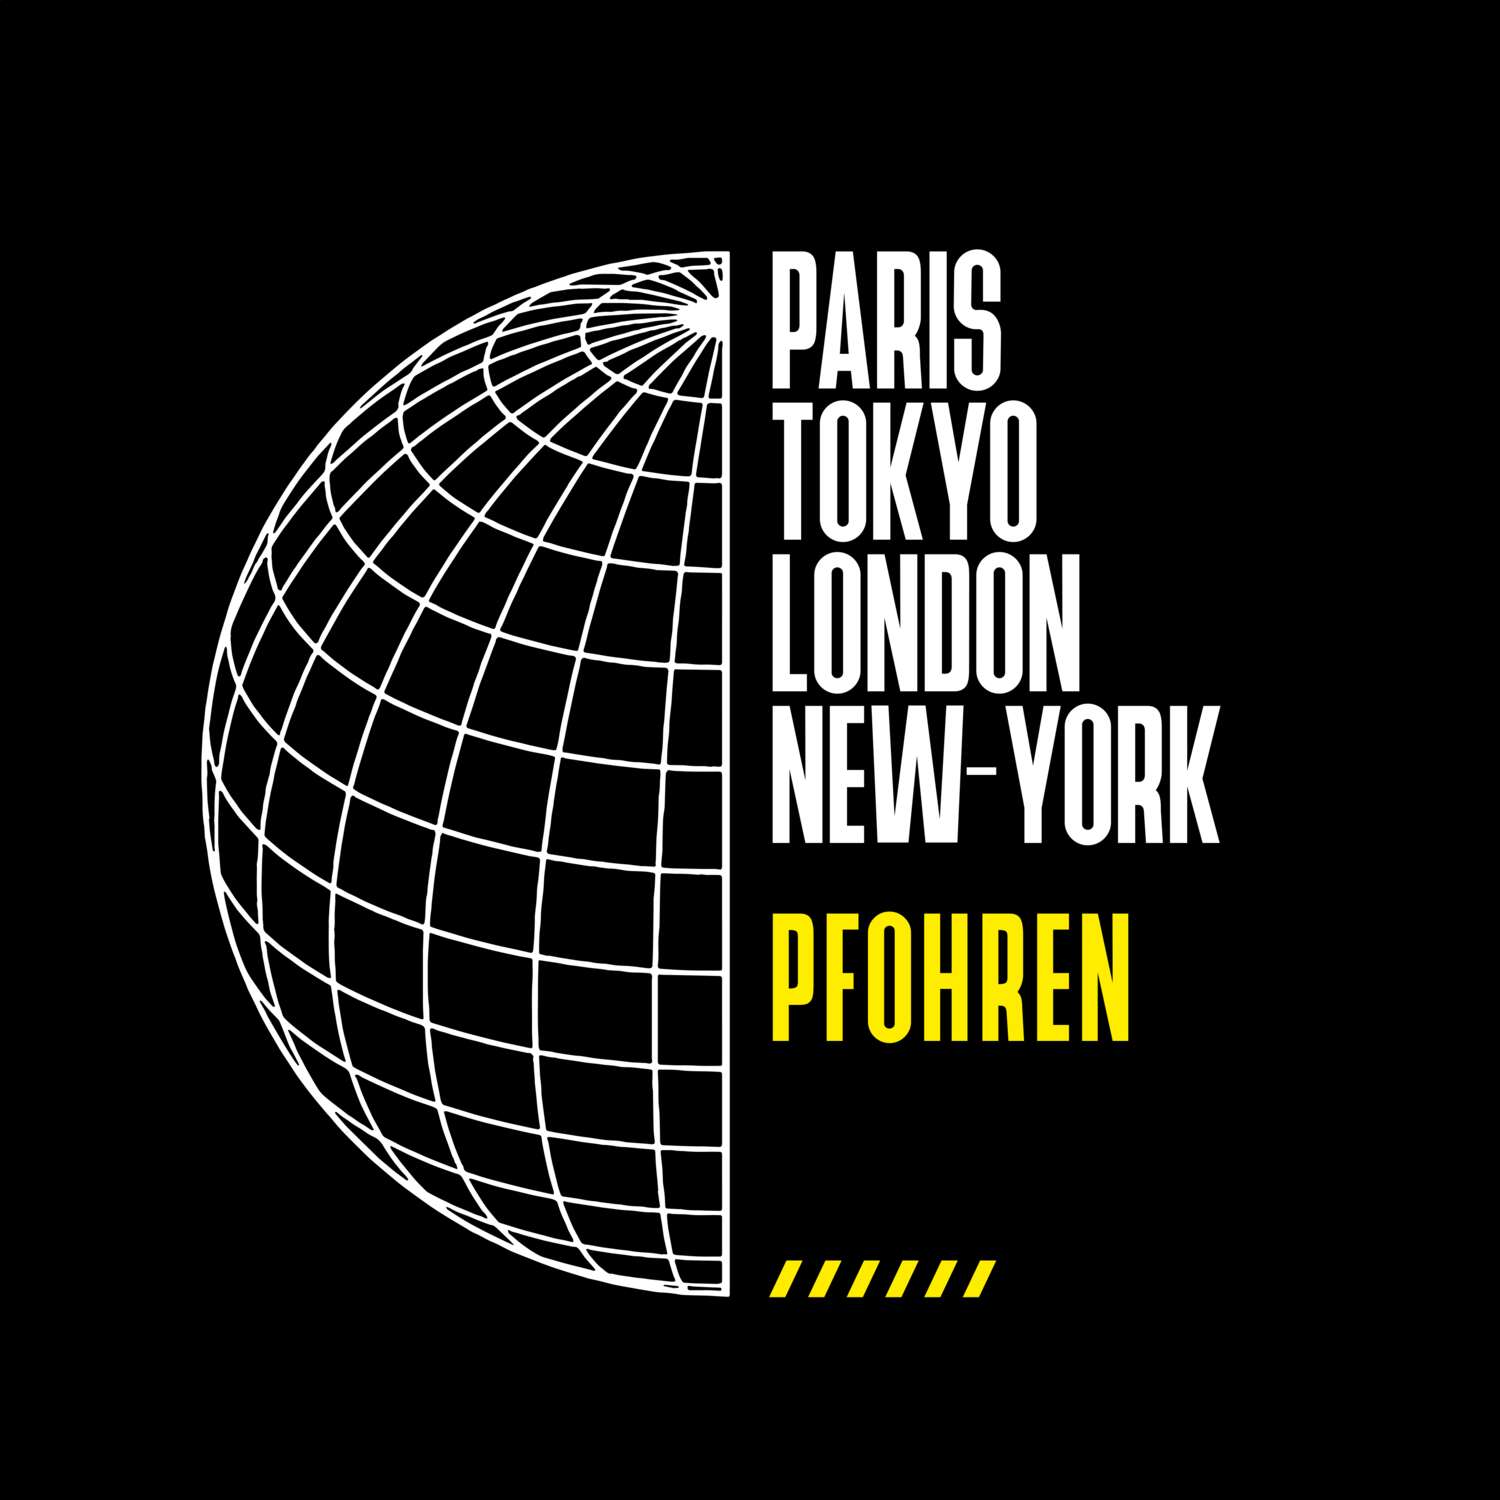 Pfohren T-Shirt »Paris Tokyo London«